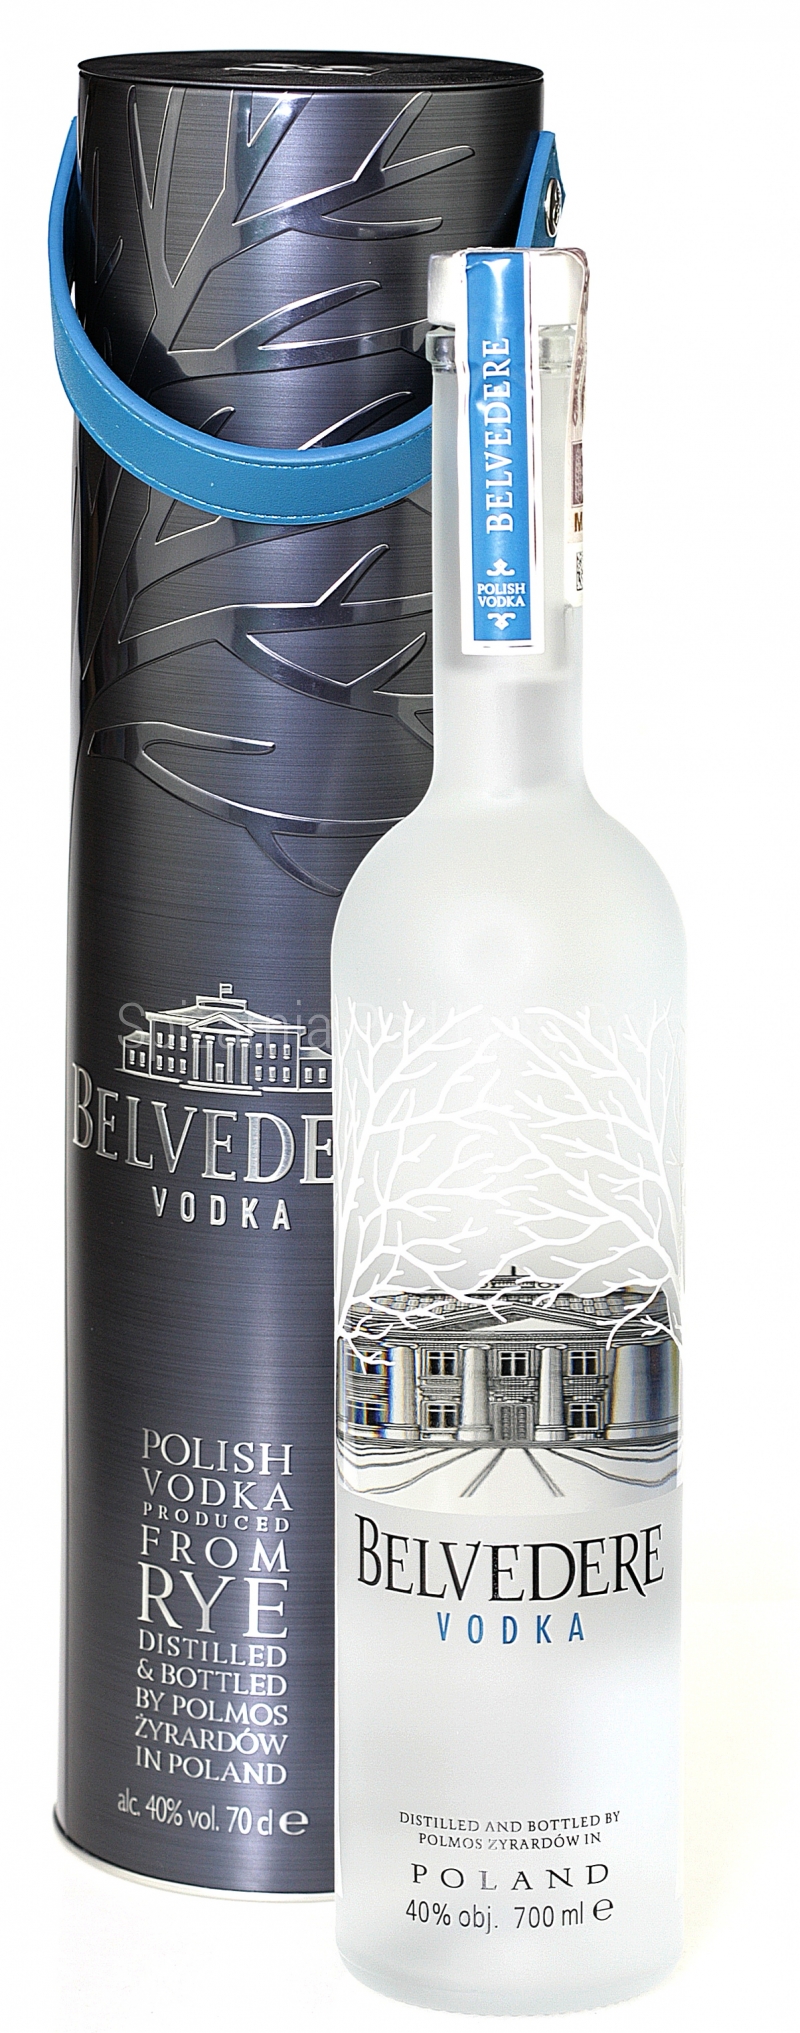 https://www.spizarniapodlysagora.pl/moduly/sklep/UserFiles/big/1785/-/Wodka-Belvedere-0-7-l--puszka-ze-skorzanym-uchwytem.jpg